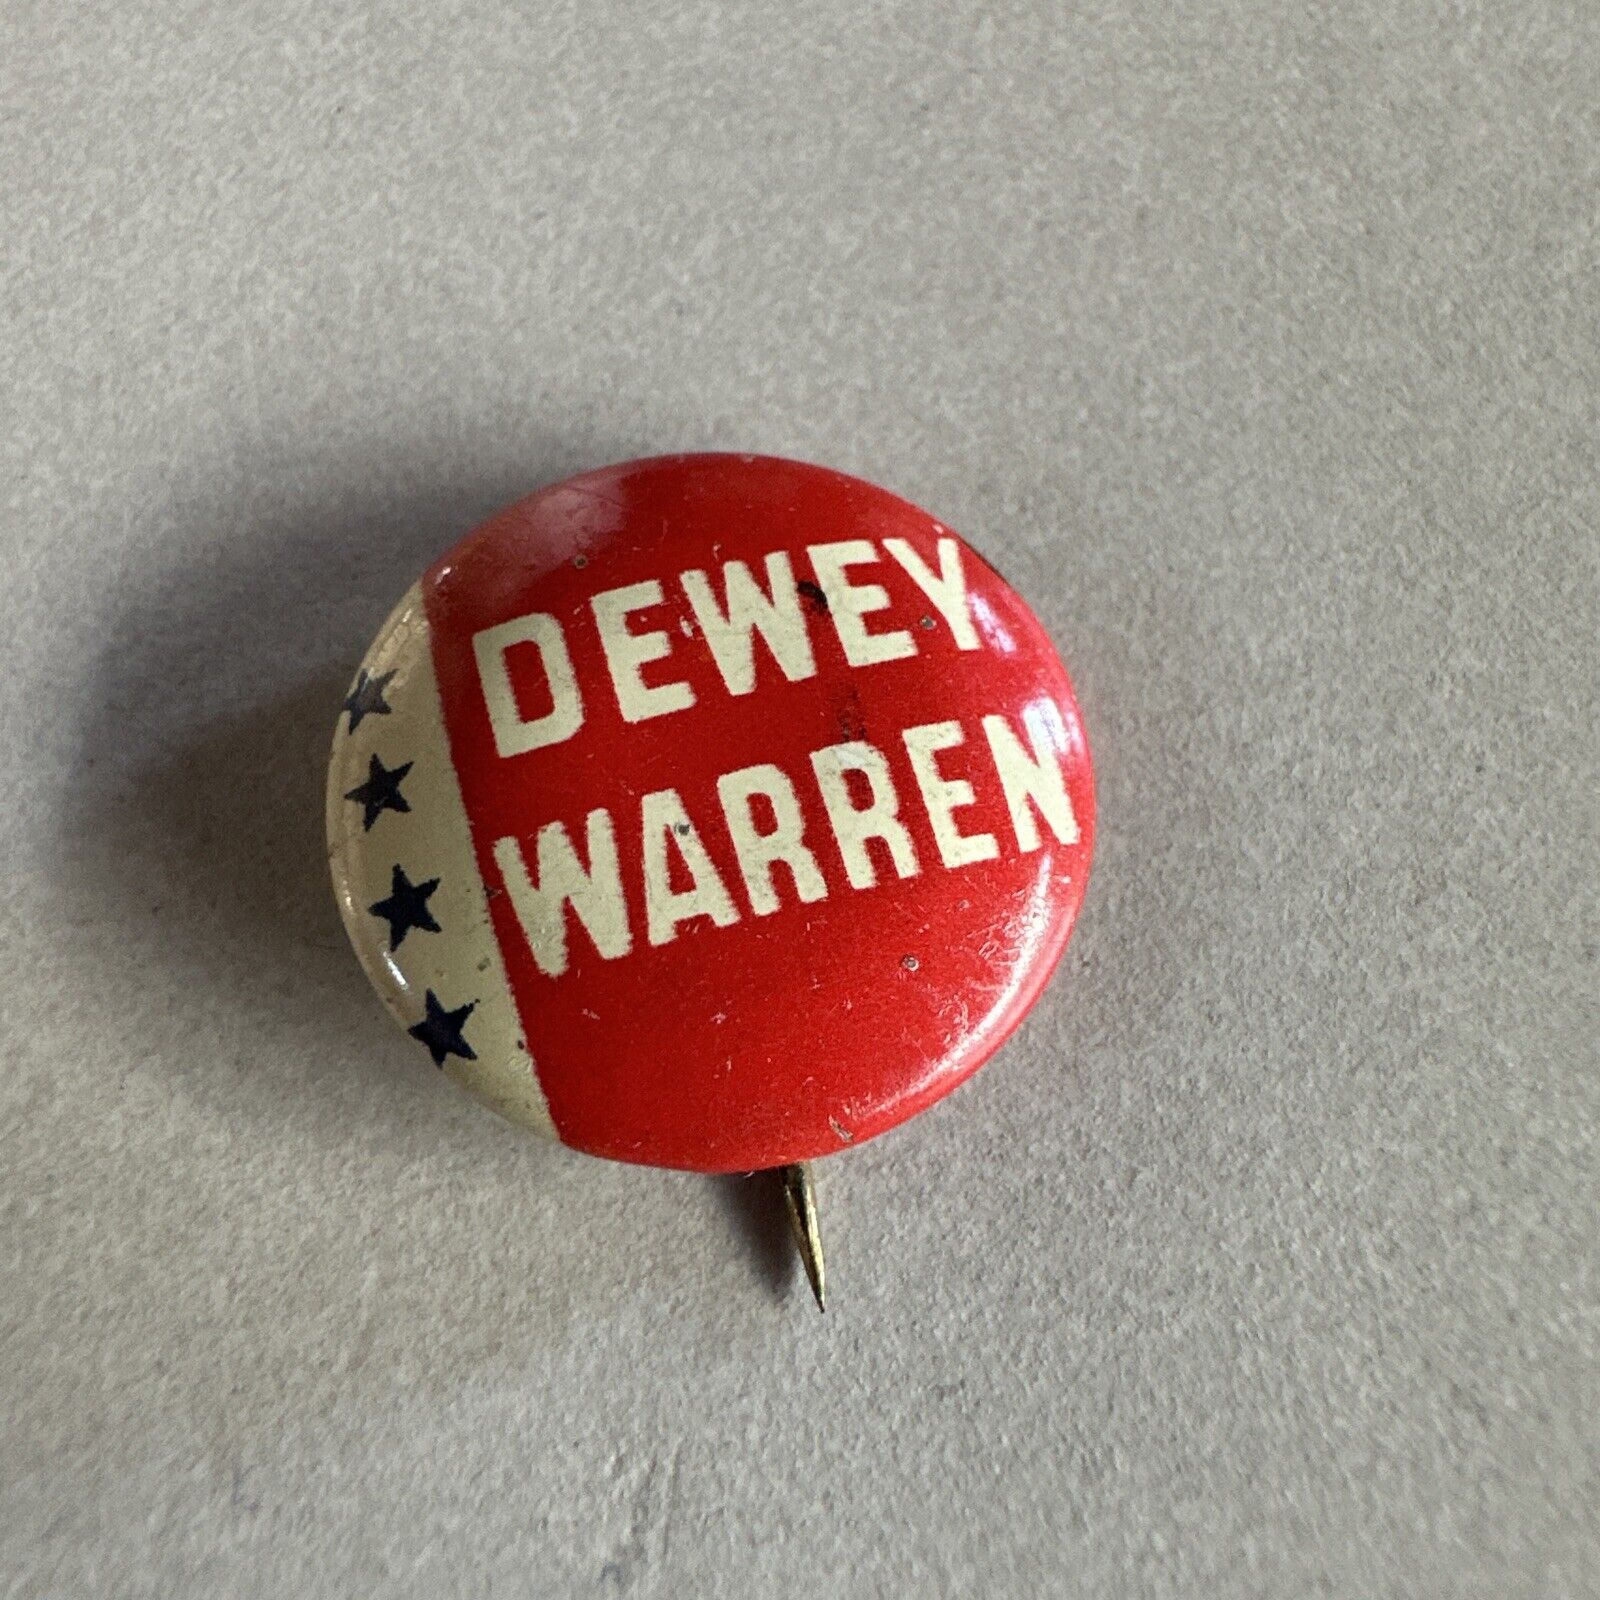 Vintage 1948 Thomas DEWEY Earl WARREN Campaign Button